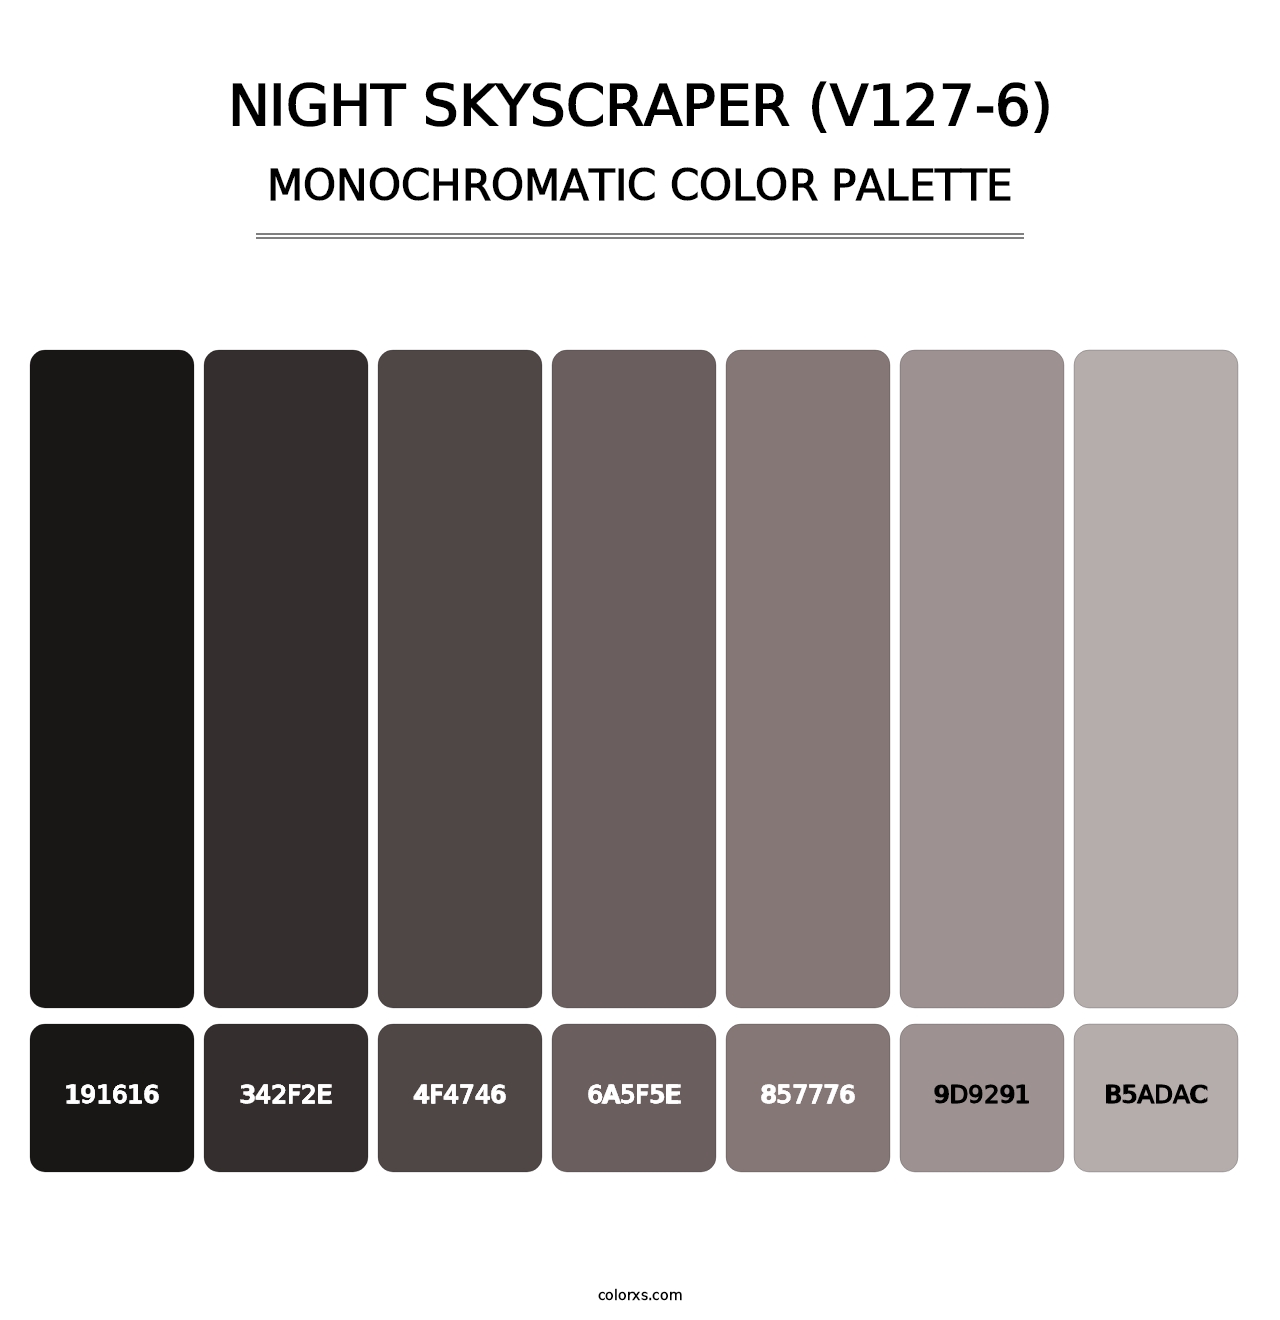 Night Skyscraper (V127-6) - Monochromatic Color Palette